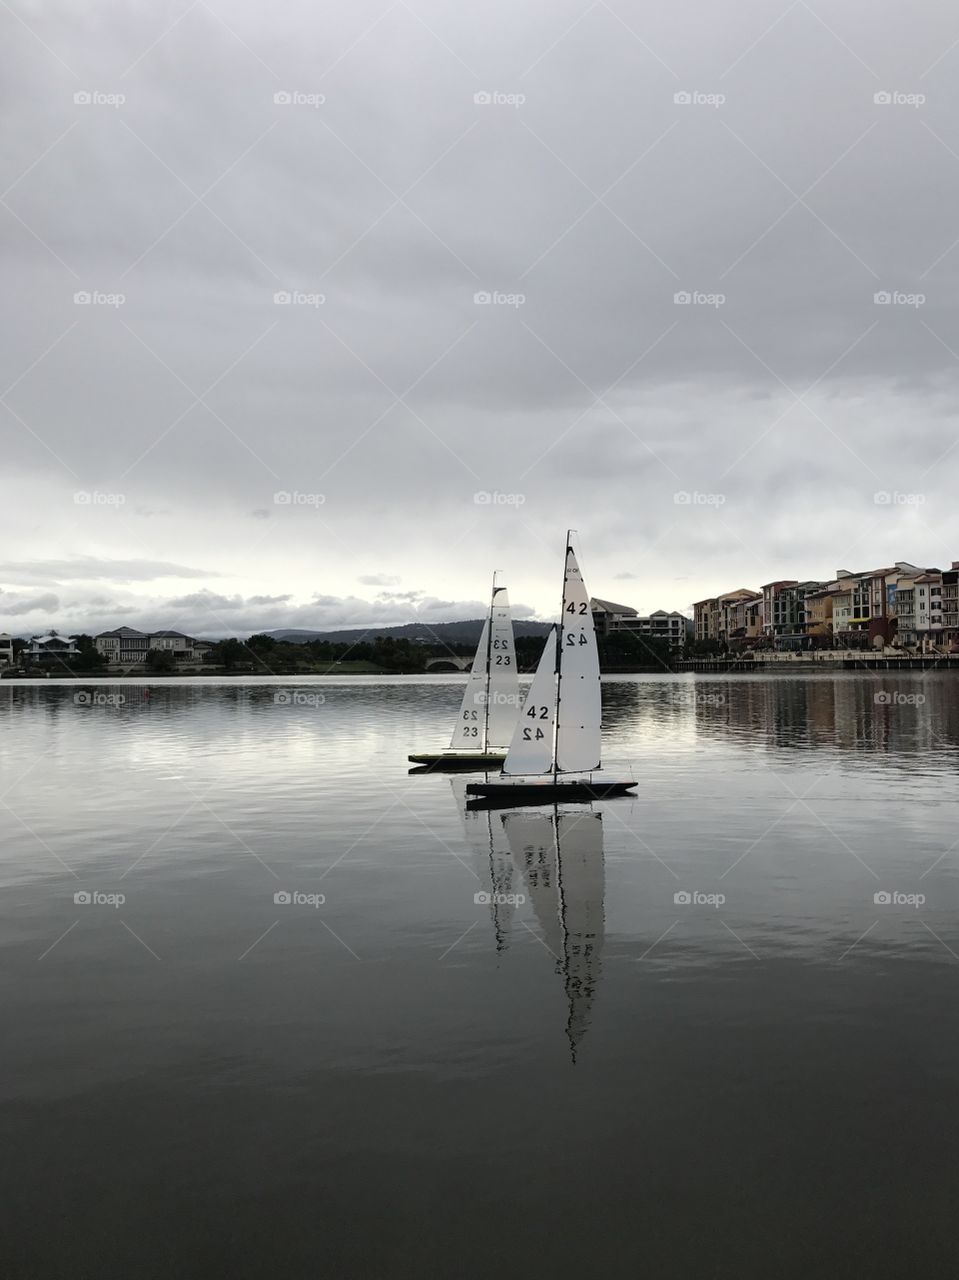 Sailing reflection 